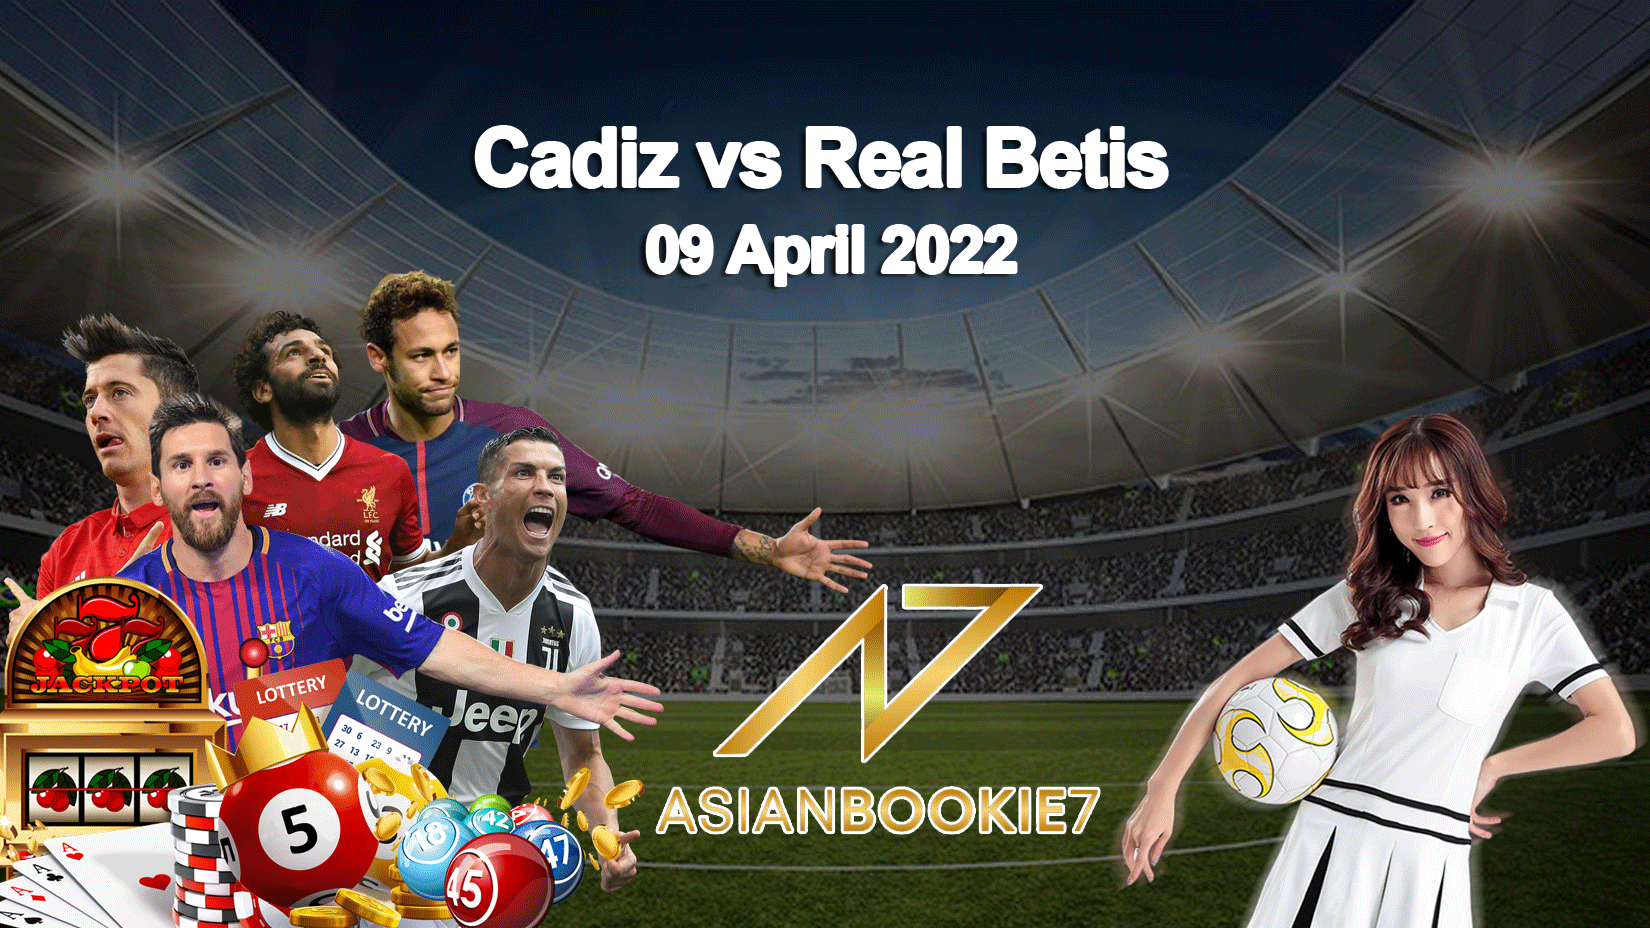 Prediksi Cadiz vs Real Betis 09 April 2022